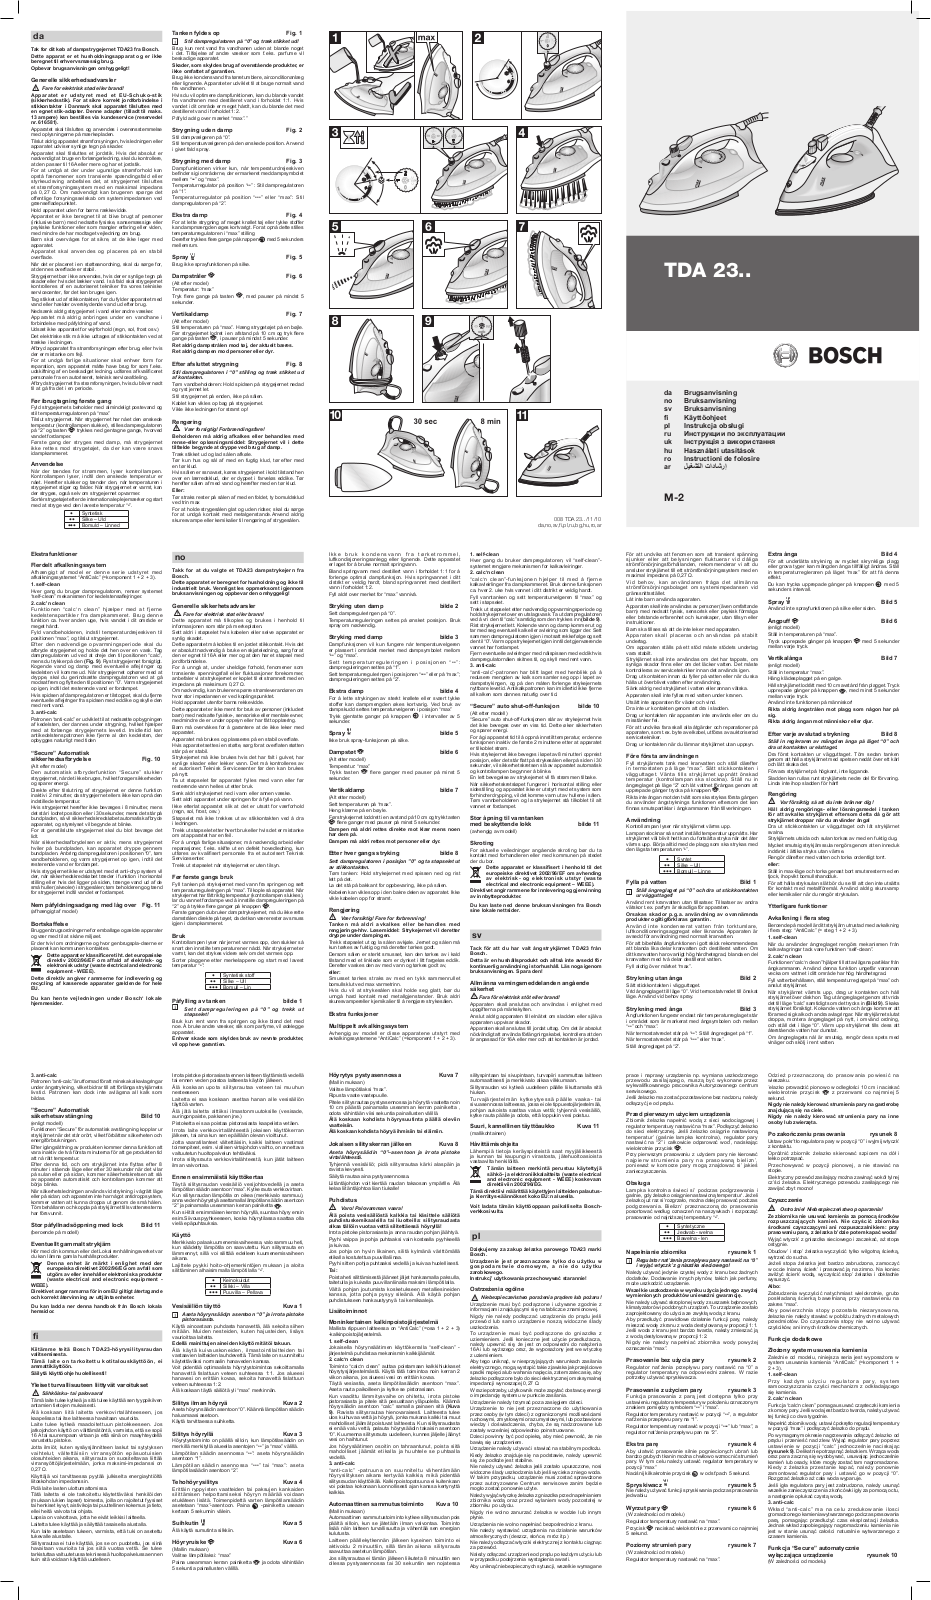 Bosch TDA 2340, TDA 2315 User Manual